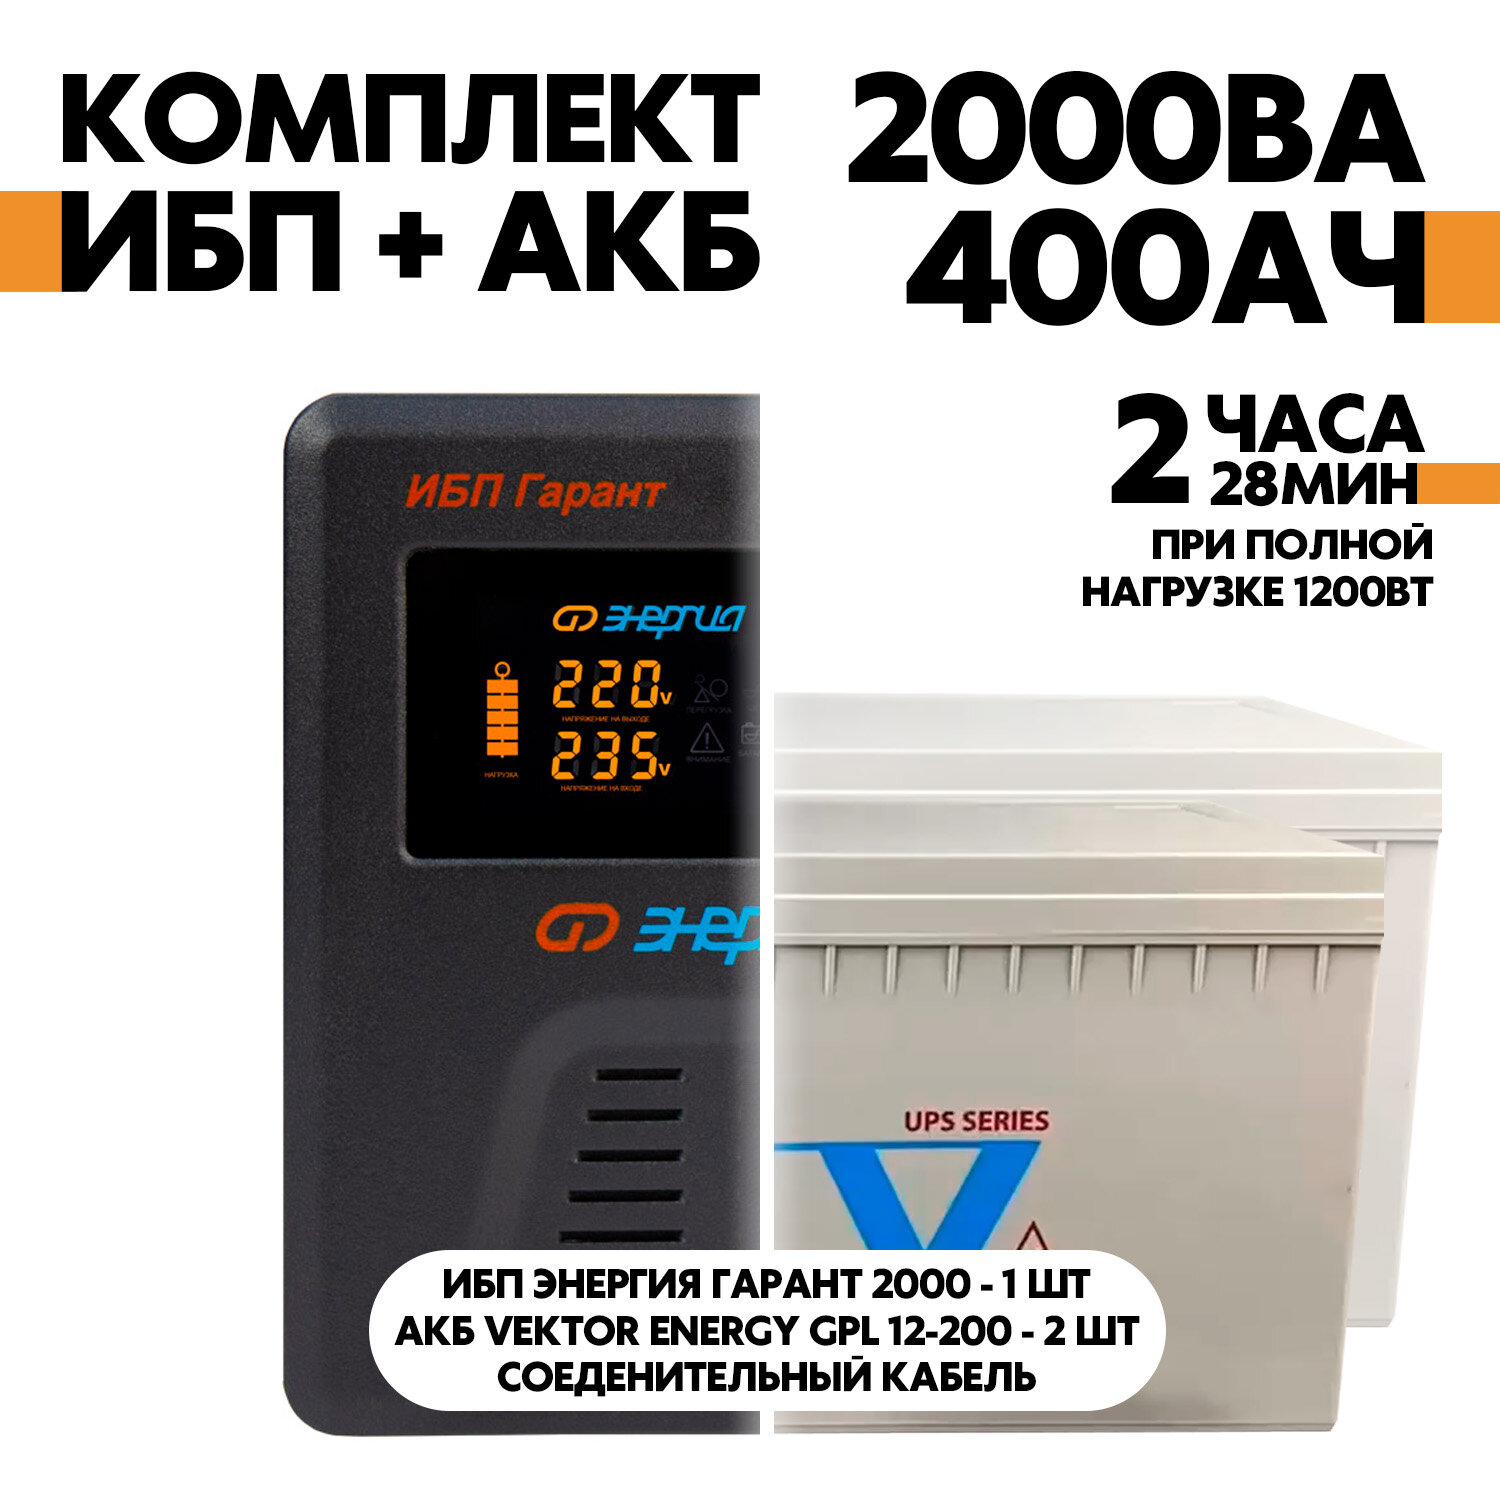 Интерактивный ИБП Энергия Гарант 2000 в комплект с АКБ Vektor Energy GPL 12-200 2шт.